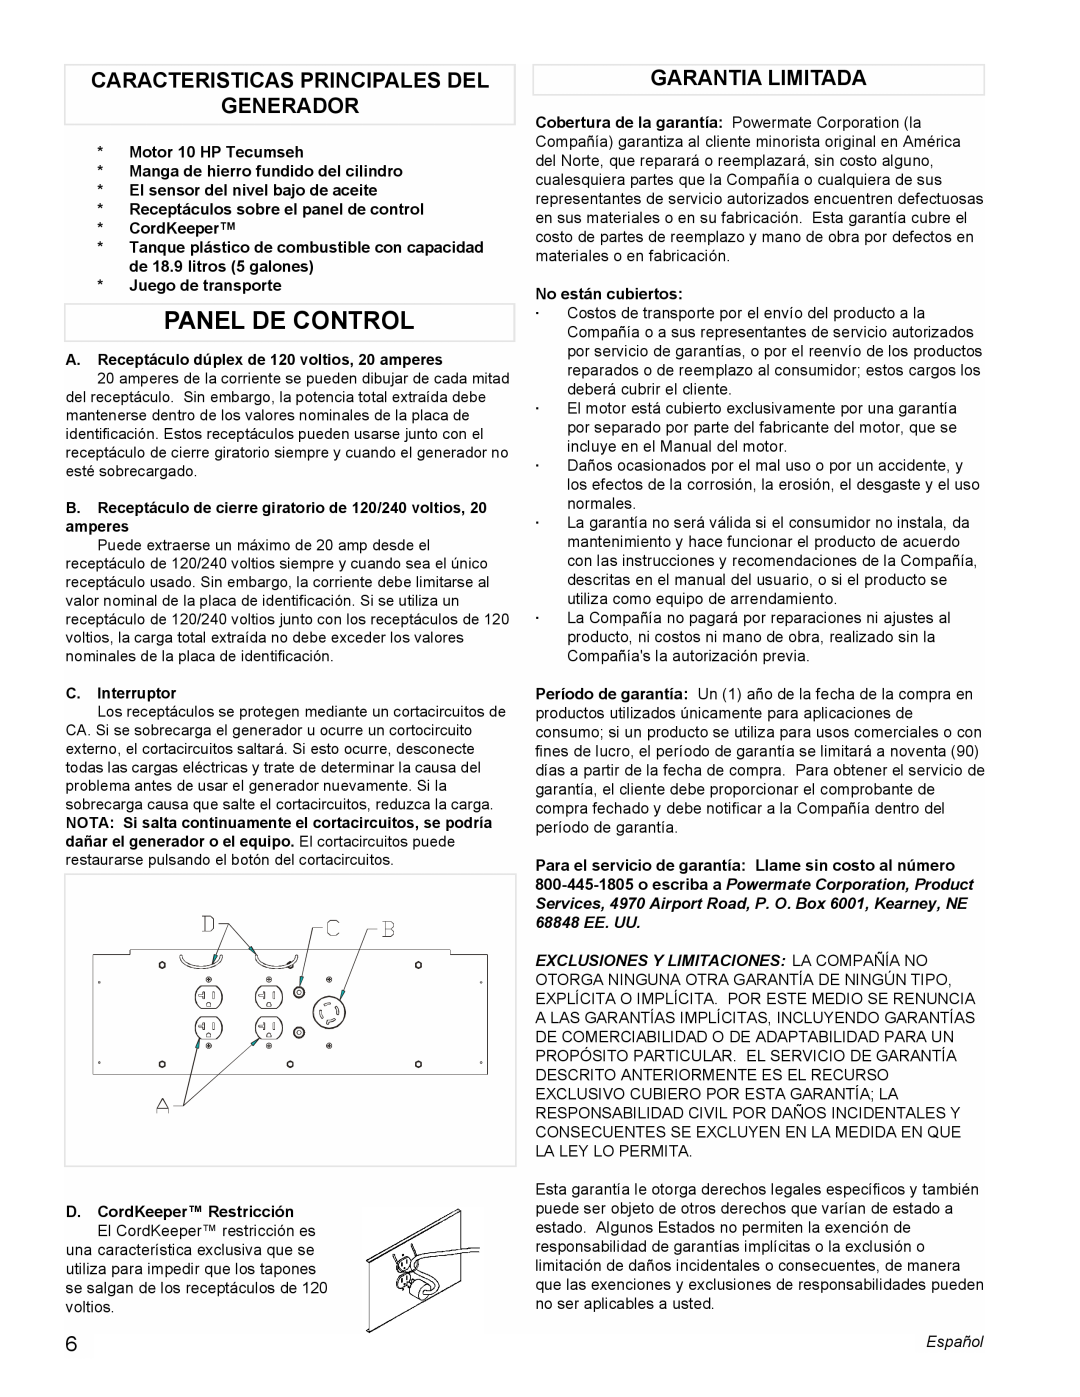 Powermate PM0525312.01 manual Panel De Control, Caracteristicas Principales Del Generador, Garantia Limitada 